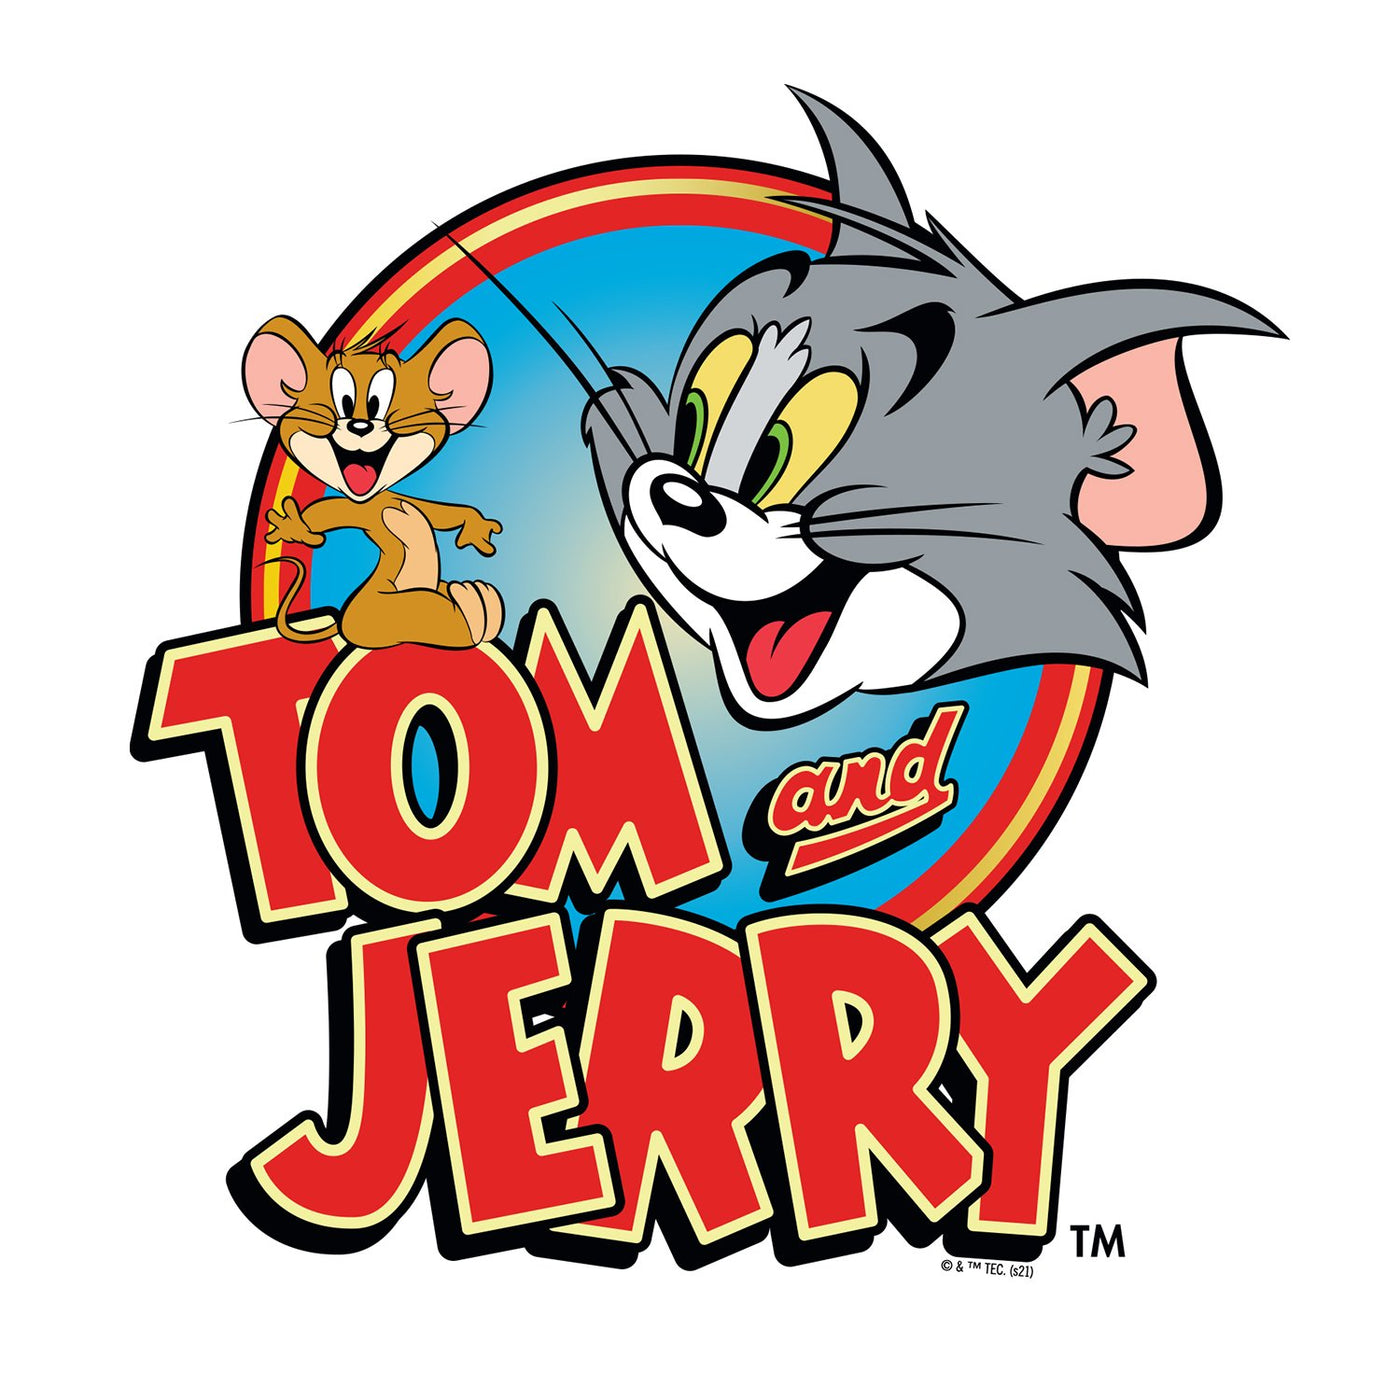 Tom and Jerry Logo Adult Fleece Hooded Sweatshirt